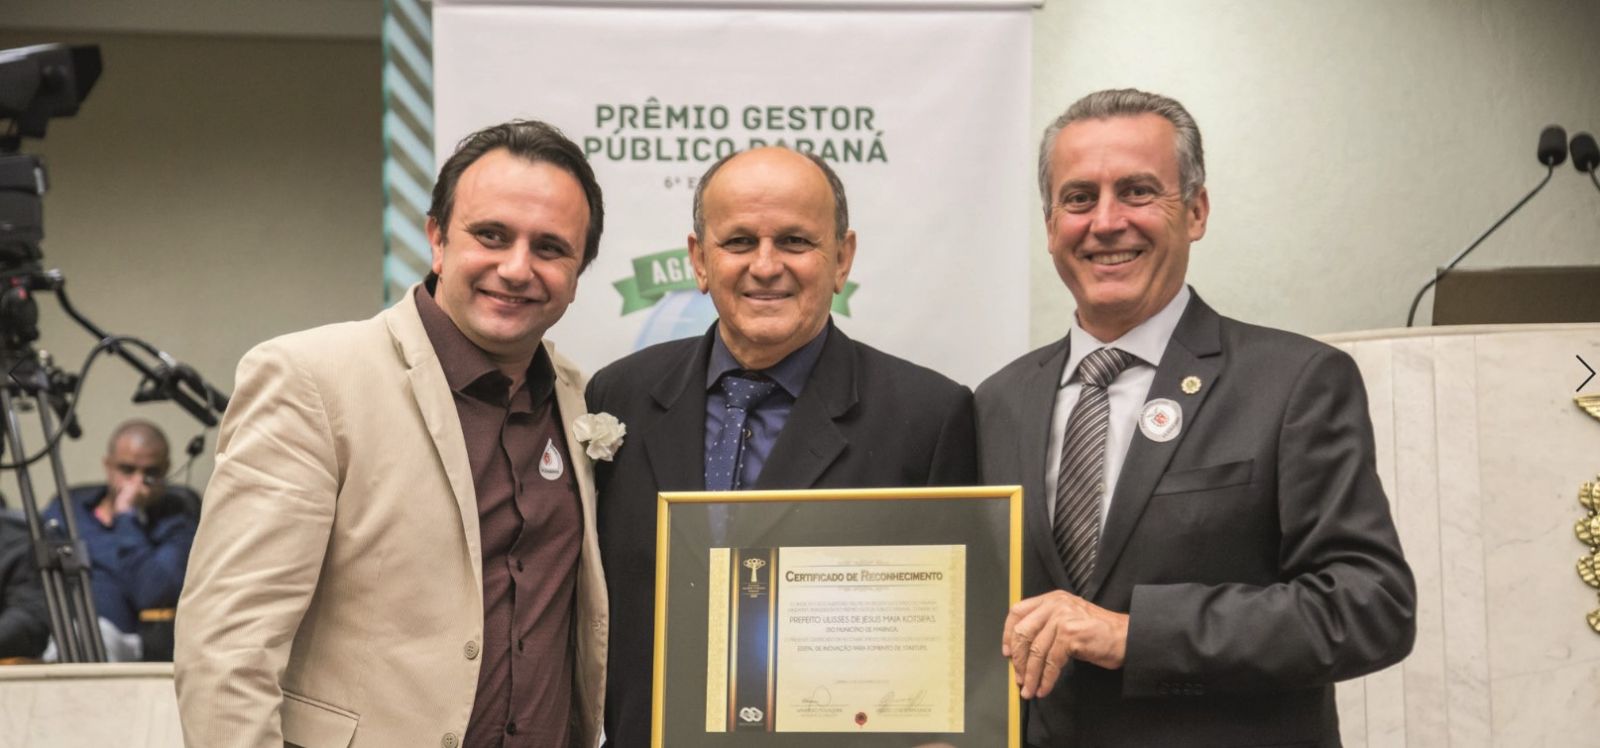 Diretor de Inovação da Secretaria de Inovação e Desenvolvimento Econômico à época, Franz Wagner, recebe o Certificado de Reconhecimento pelo Edital de Inovação